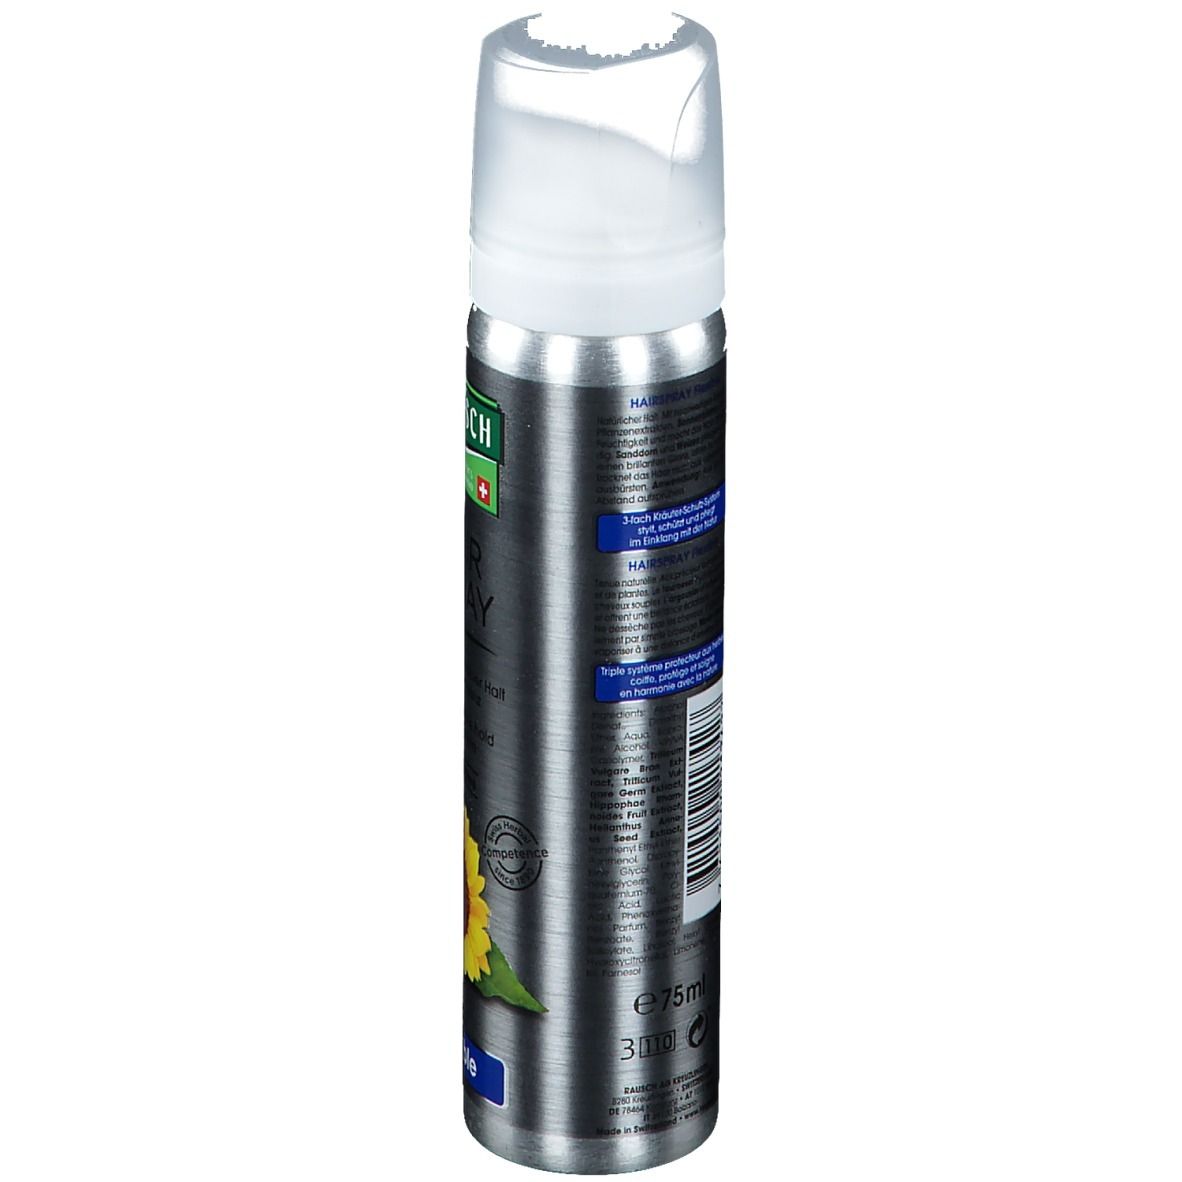 RAUSCH Hairspray Flexible Aerosol